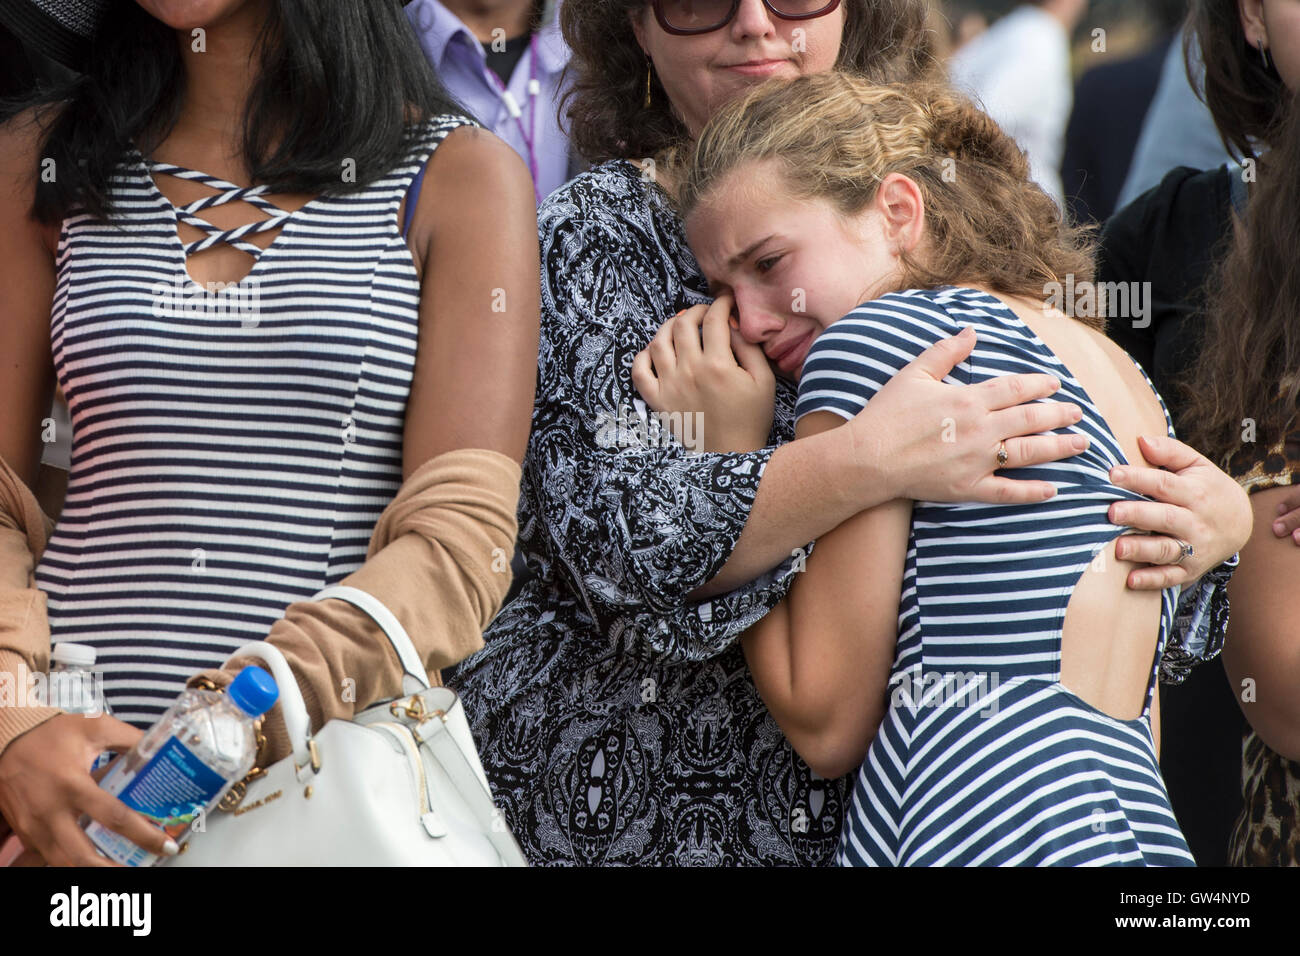 Rachael Fisher, 12, reagiert während einer Gedenkveranstaltung anlässlich des 15. Jahrestages des 9/11 Terroranschläge im Pentagon 11. September 2016 in Arlington, Virginia. Fischer Großvater, Gerald Fisher starb während der Angriffe auf das Pentagon. Stockfoto